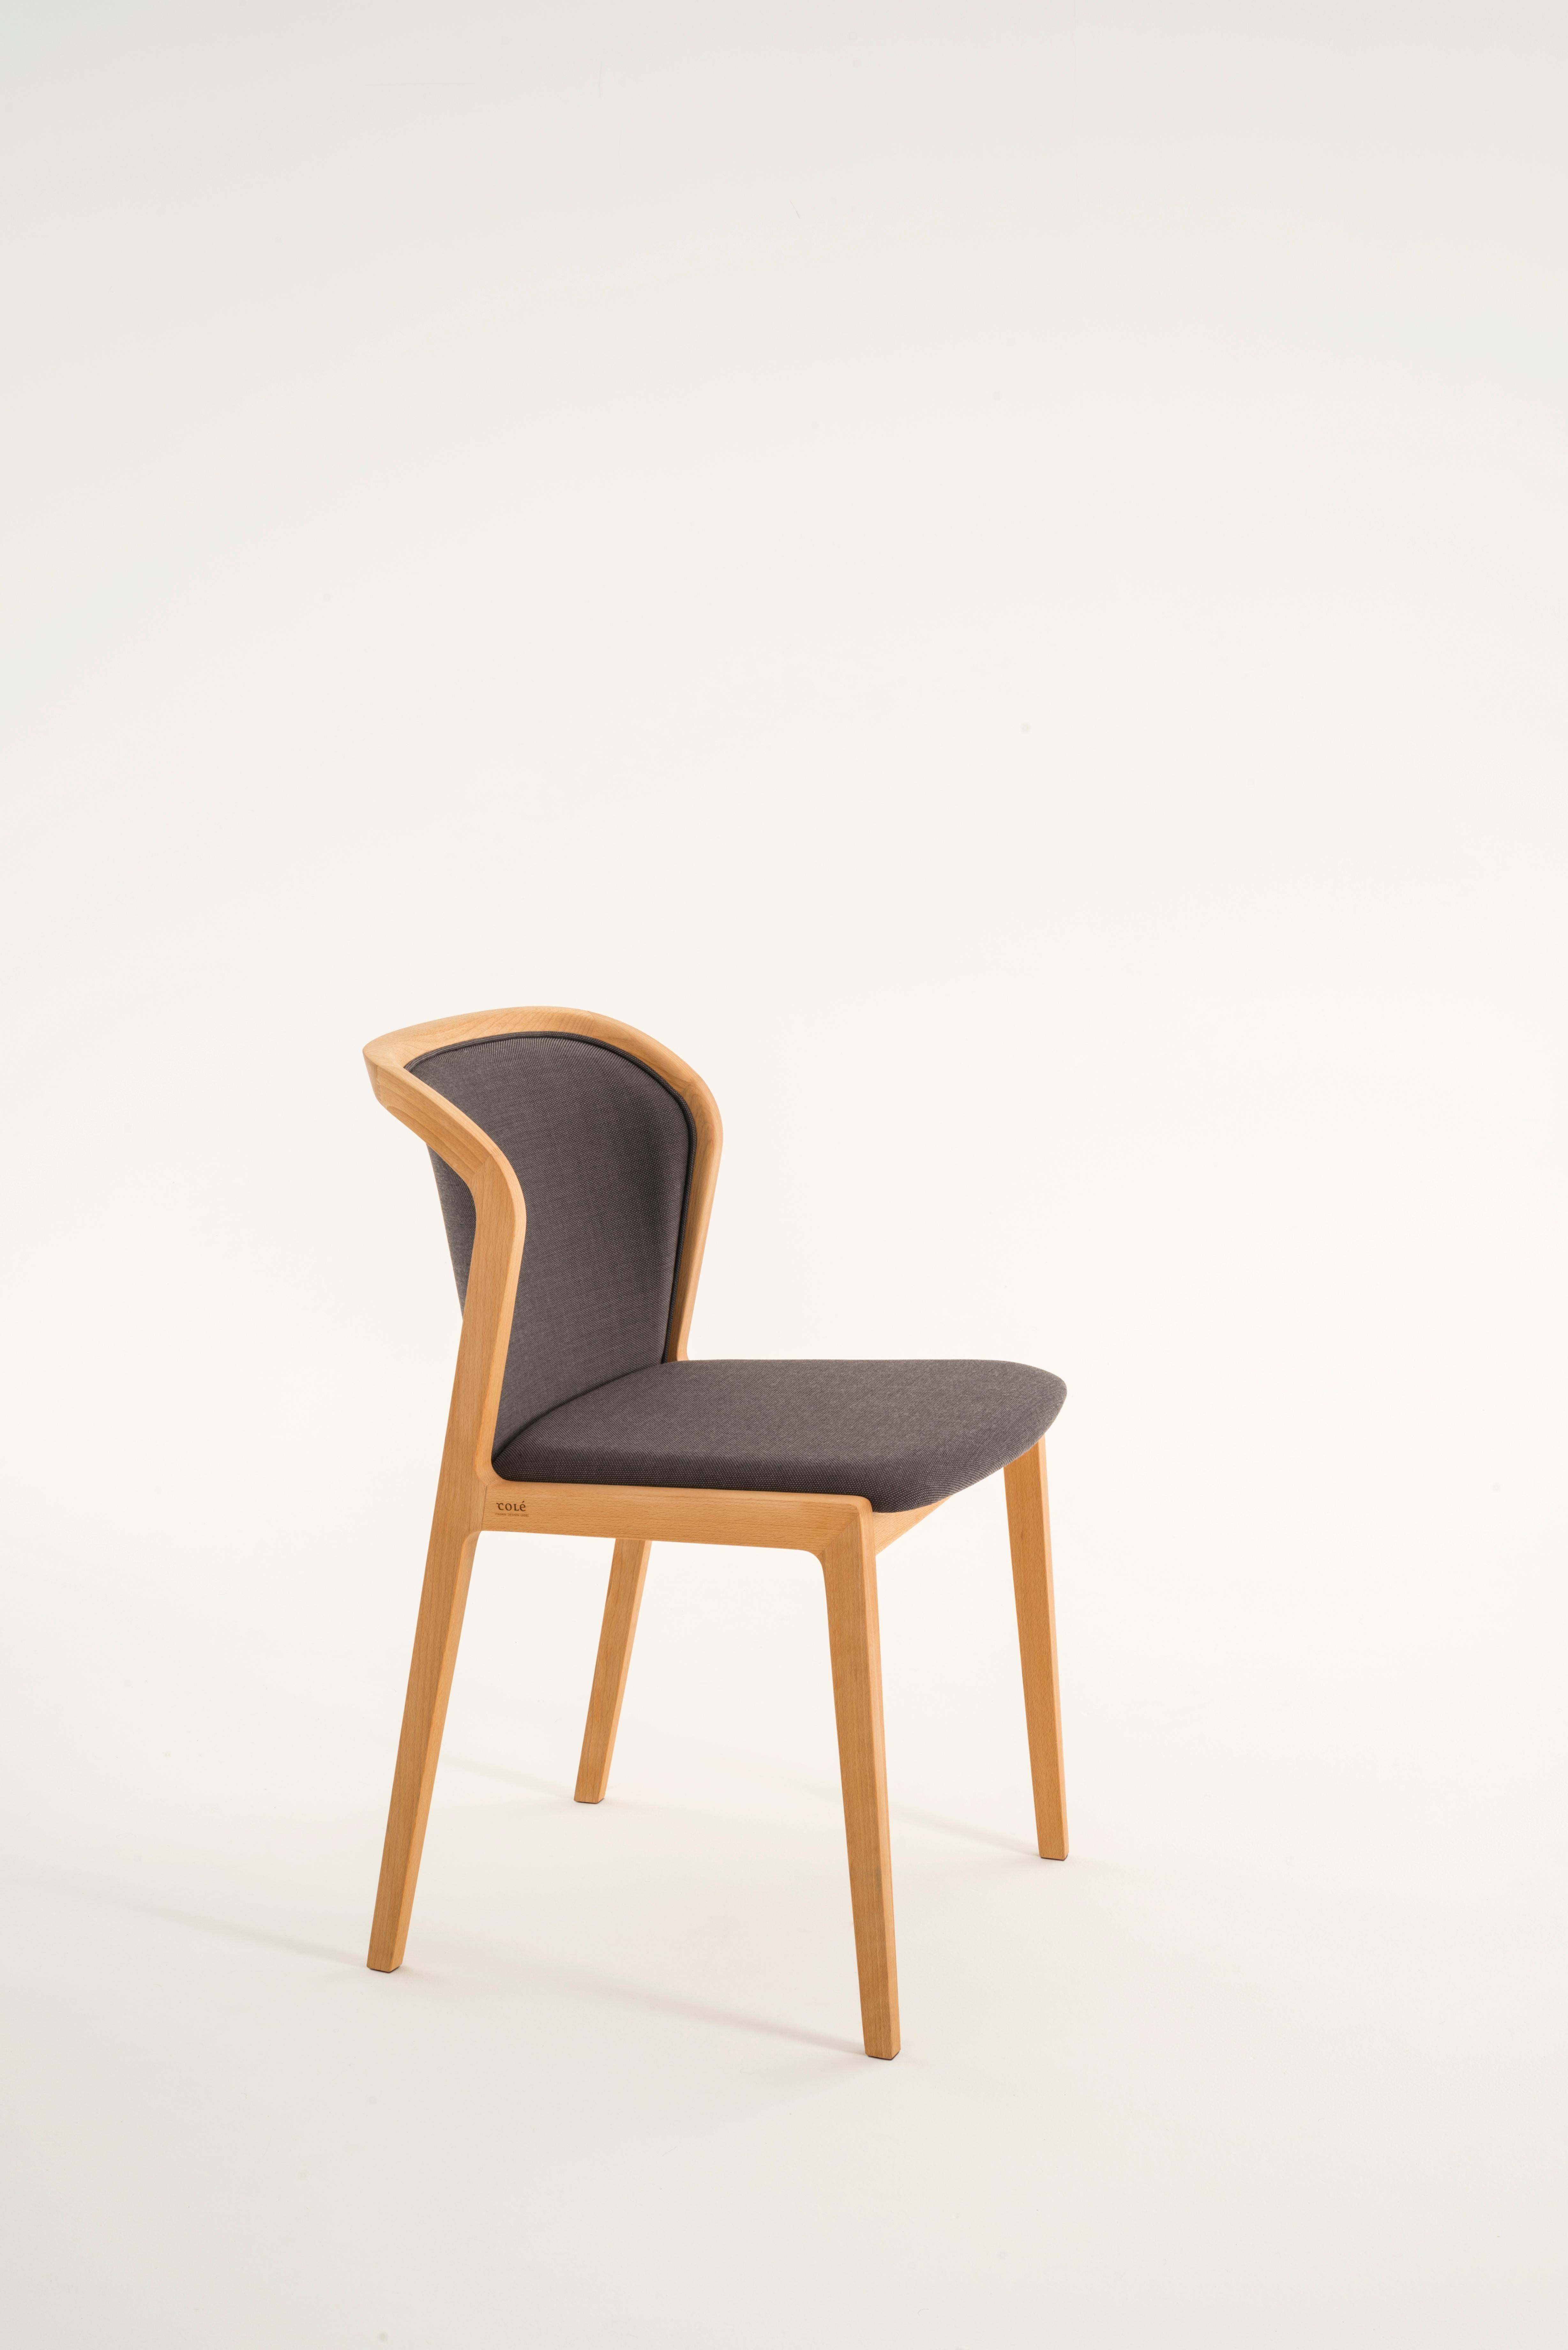 italien Chaise contemporaine Vienna, design en noyer et paille, assise tapissée beige en vente